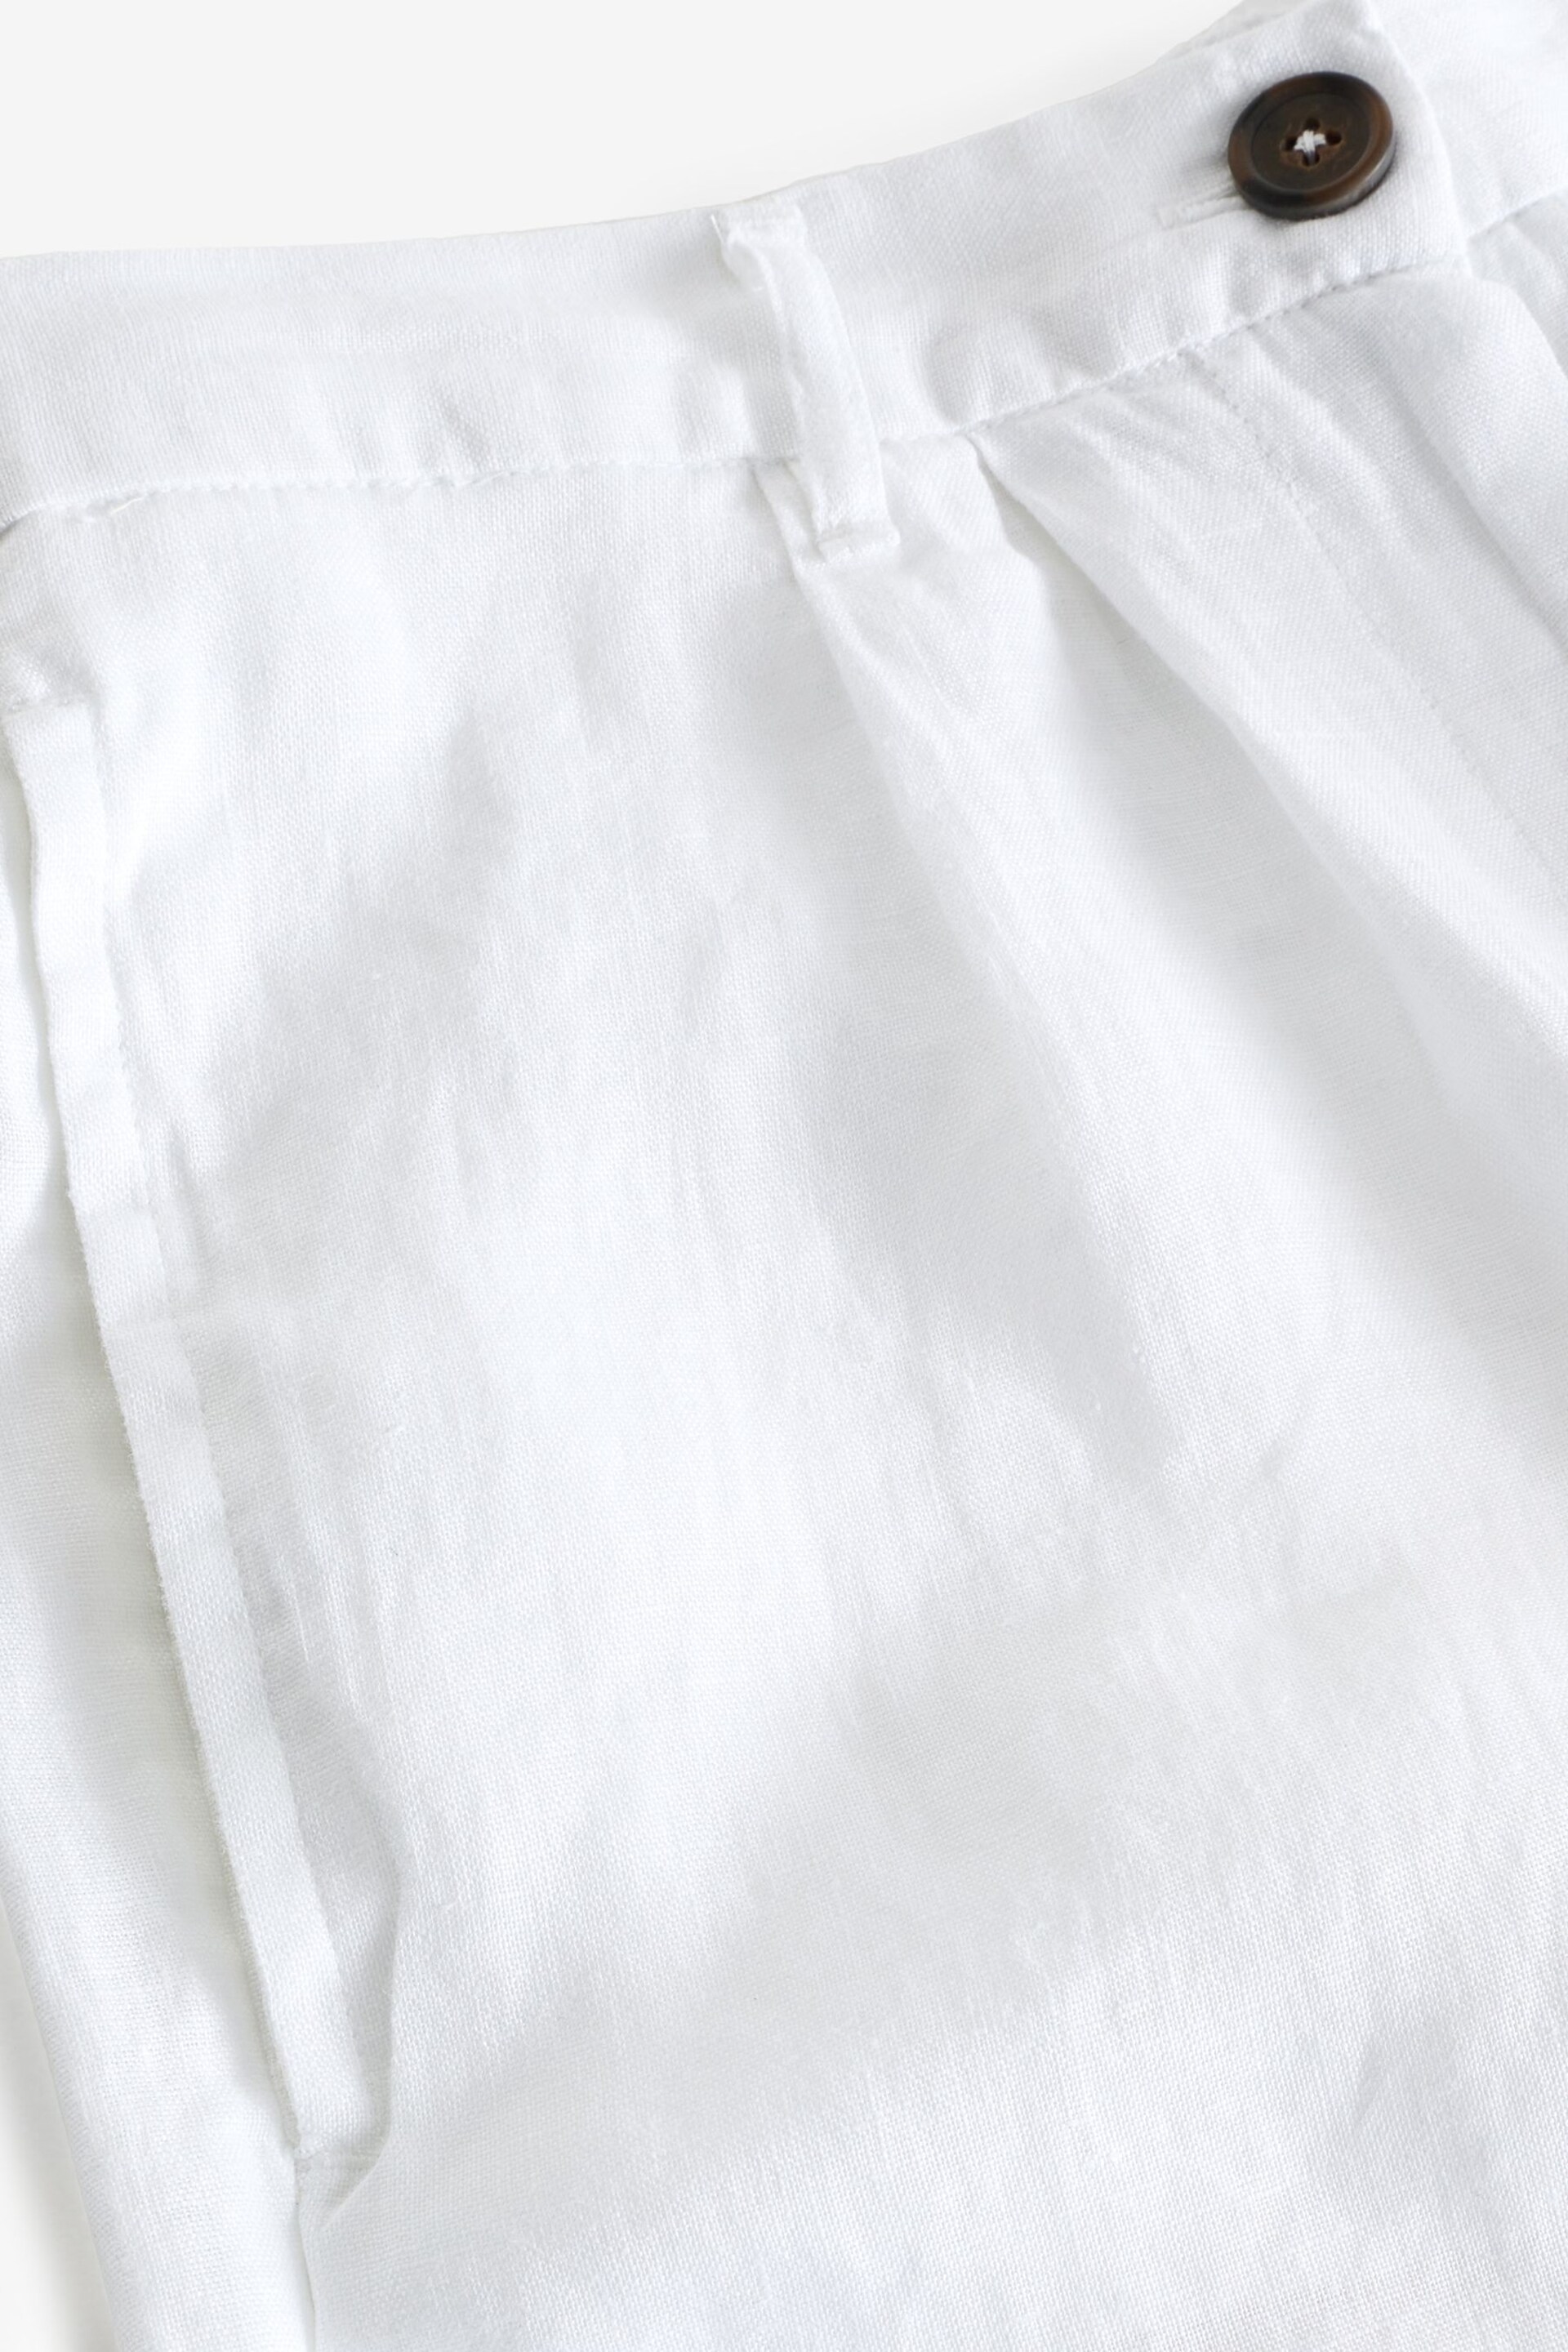 White 100% Linen City Knee Length Shorts - Image 7 of 7